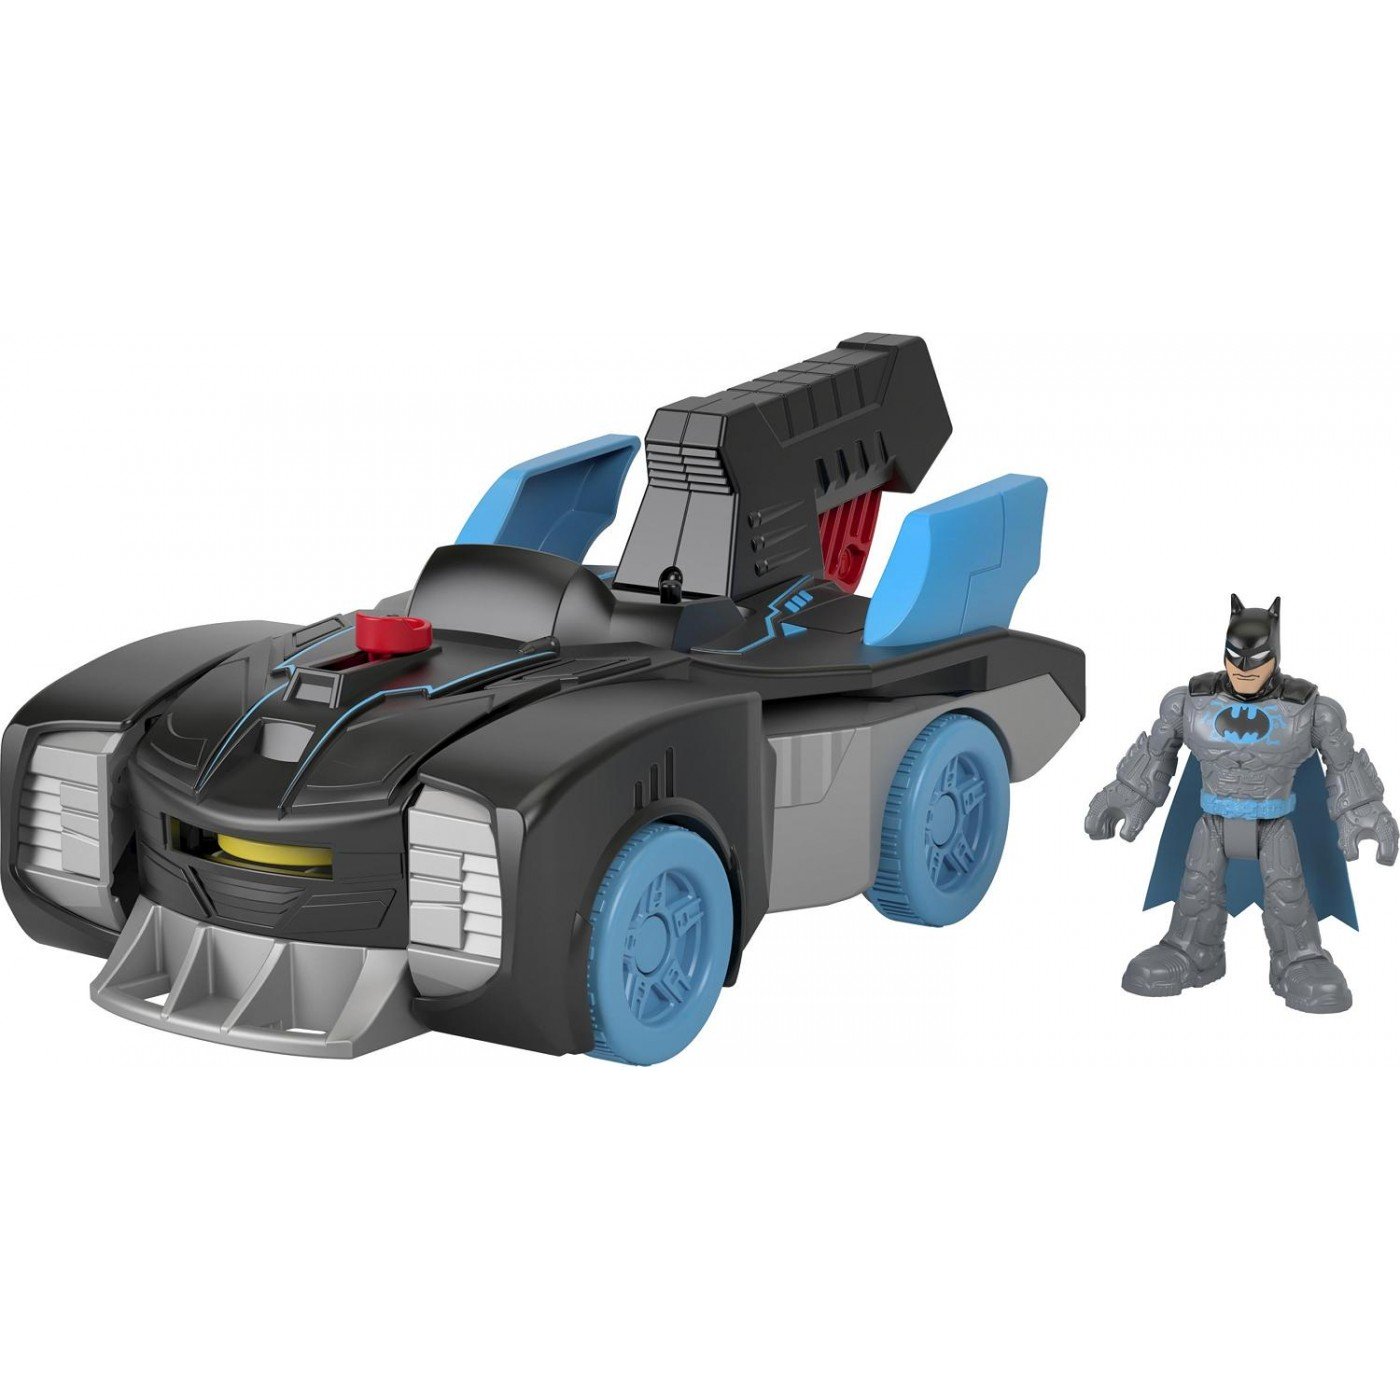 Παιχνιδολαμπάδα Imaginext Bat-Tech Batmobile DC Super Friends (Gwt240)